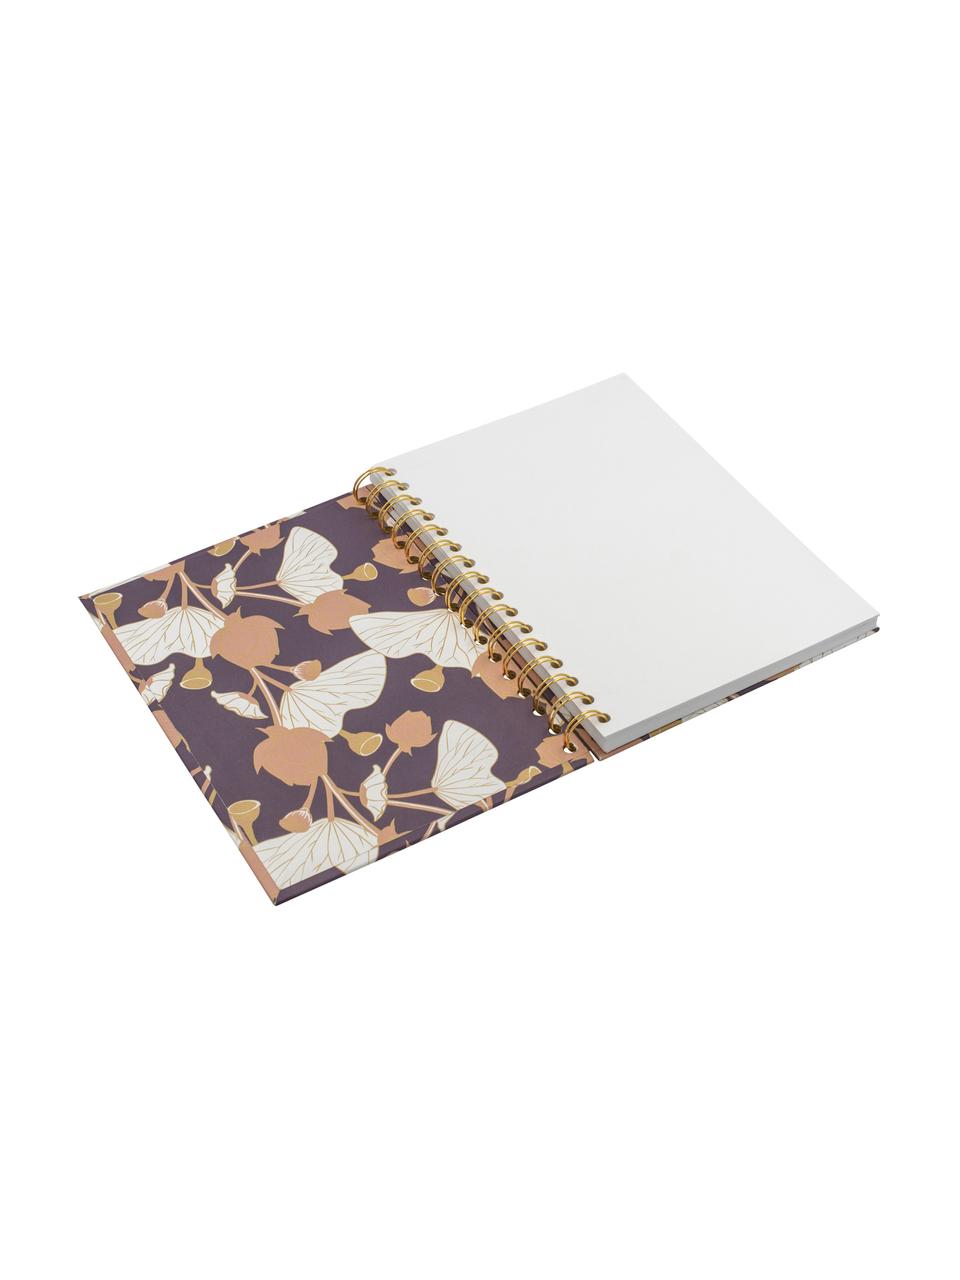 Cuaderno Lotus, Lila, rosa, amarillo, blanco, An 16 x Al 21 cm